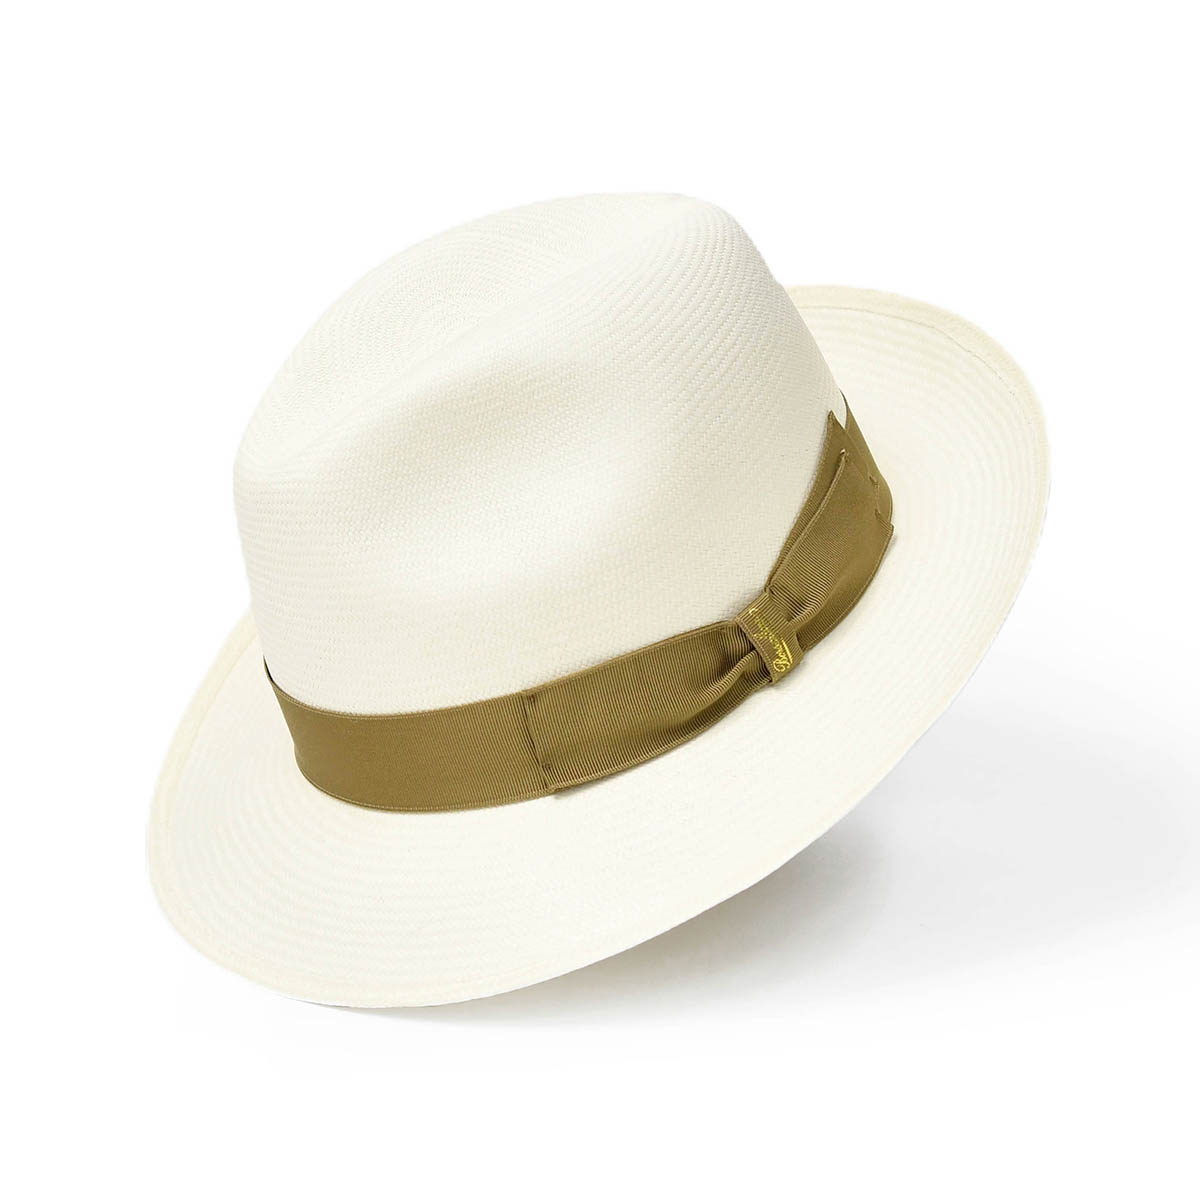 ネット限定 新品タグ付きBorsalino ボルサリーノ v840 57 白 ワイドブリム 麦わら帽子 パナマハット 高級ファイン - 麦わら帽子